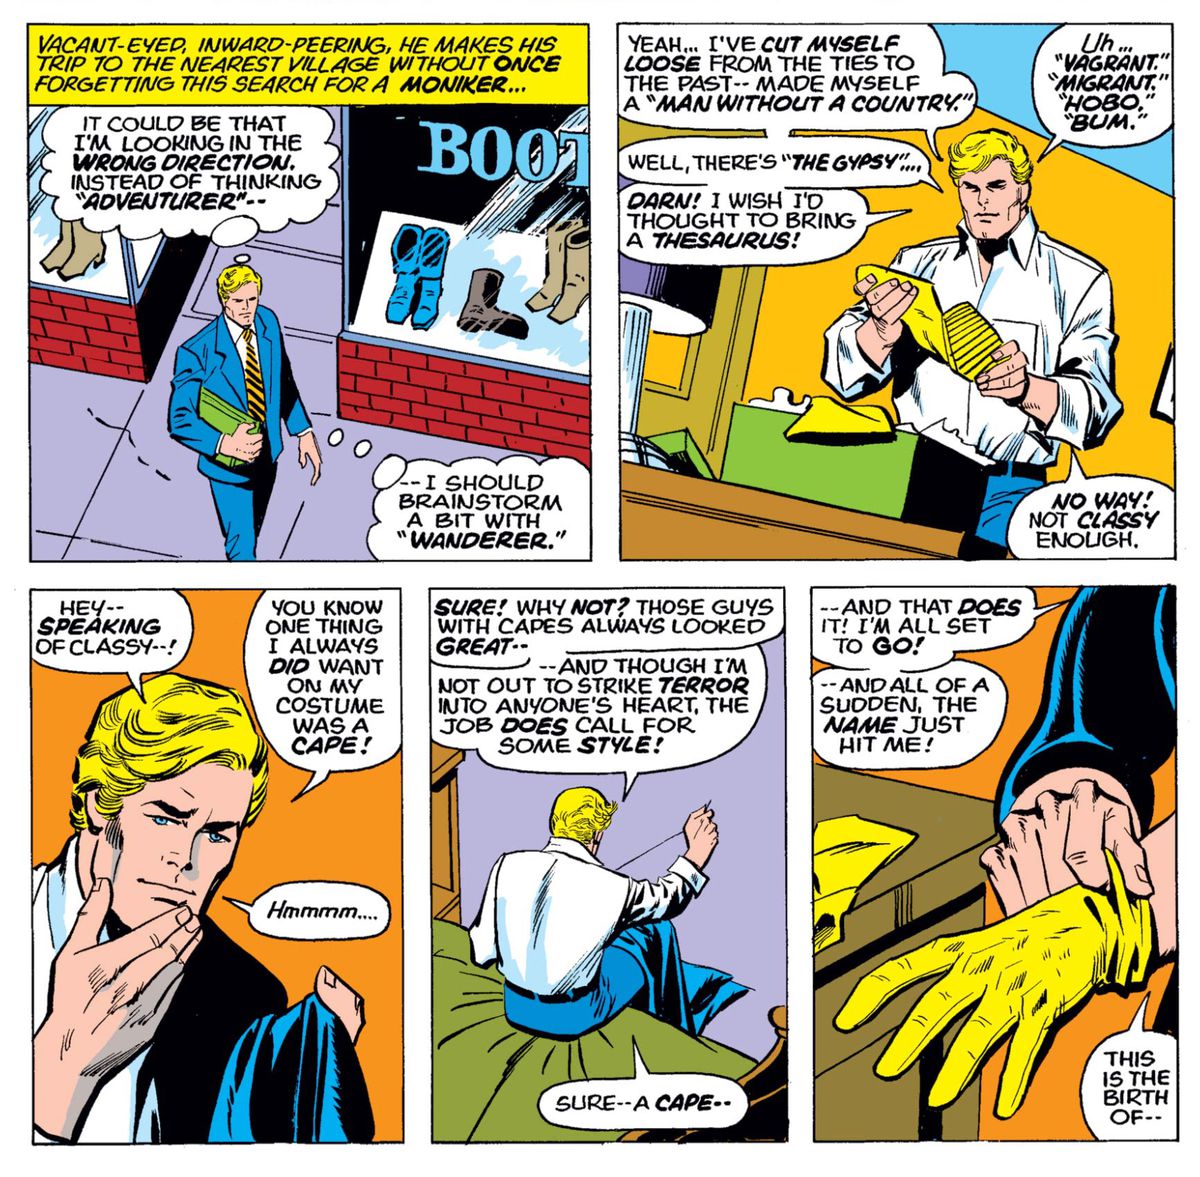 Steve Rogers köper några handskar och stövlar och slutar sy sin nya kostym i Captain America # 180, Marvel Comics (1974). 